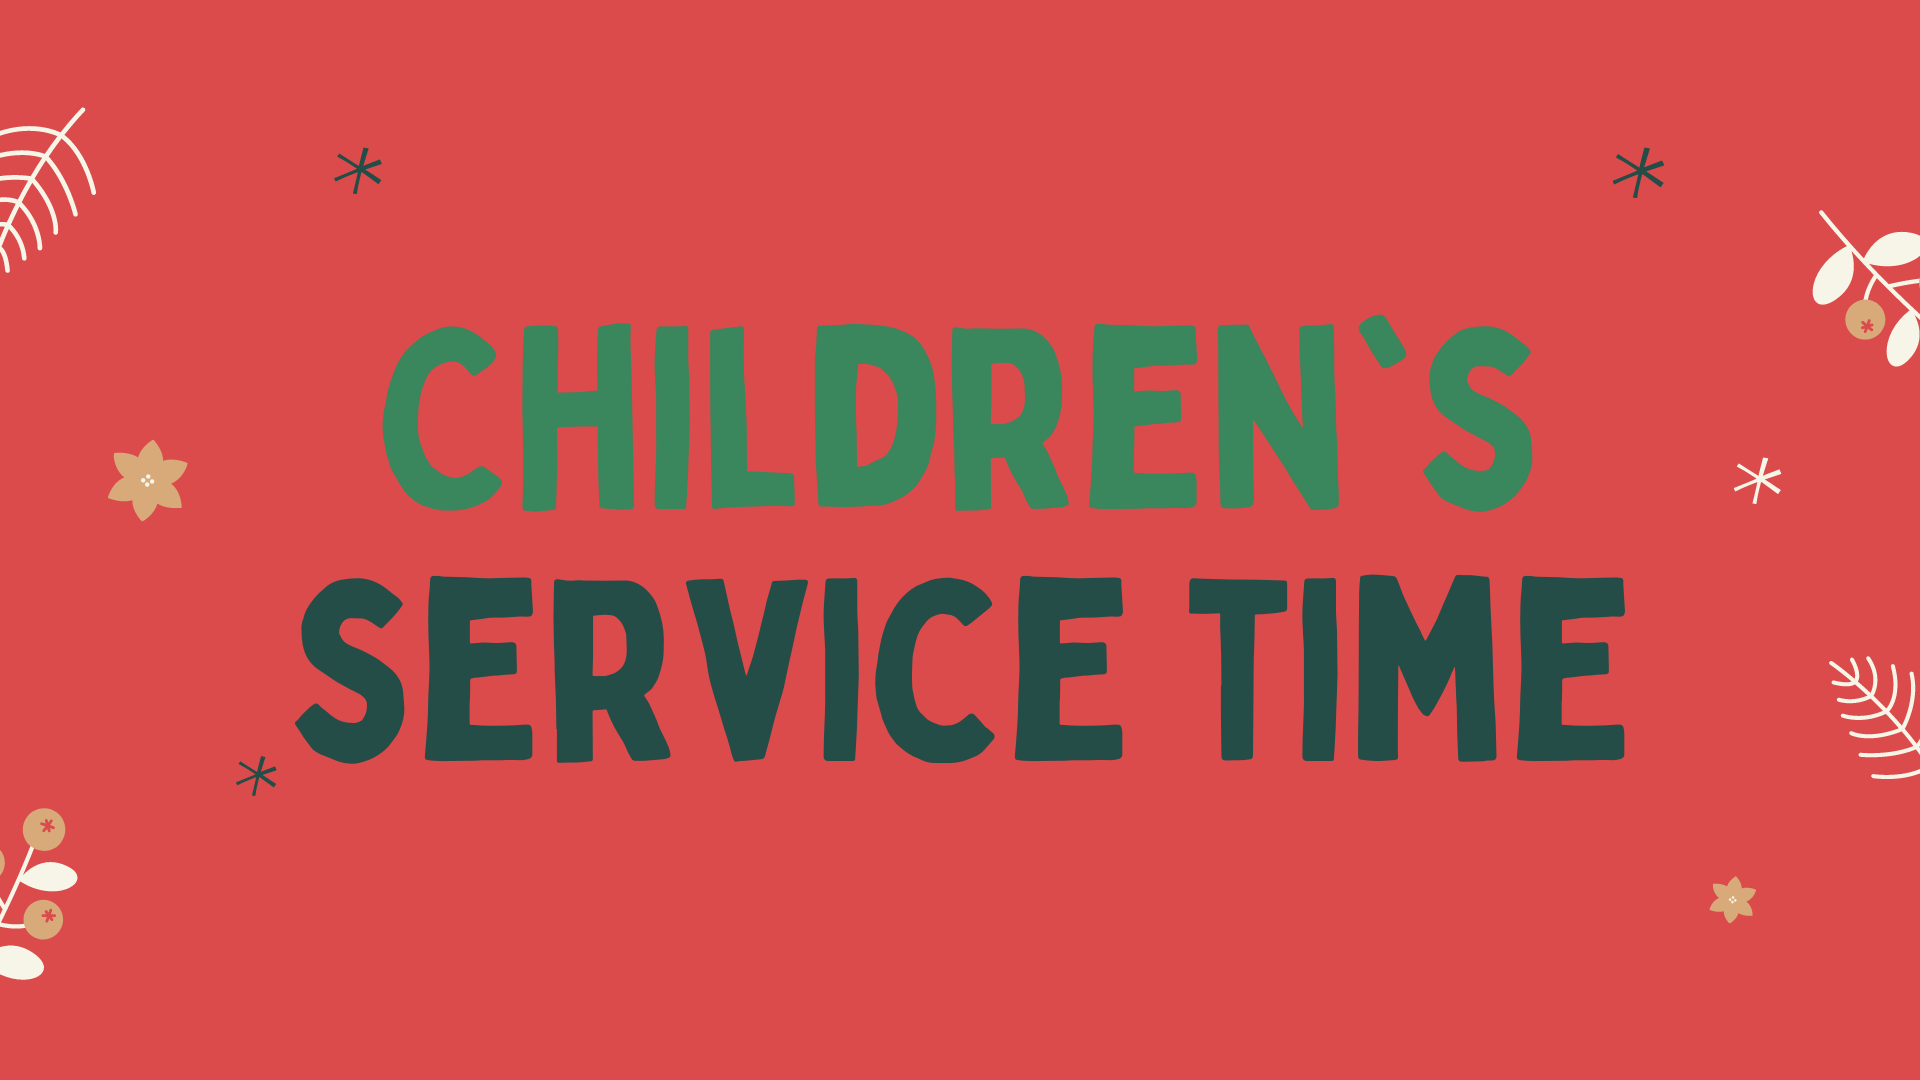 Children's Service